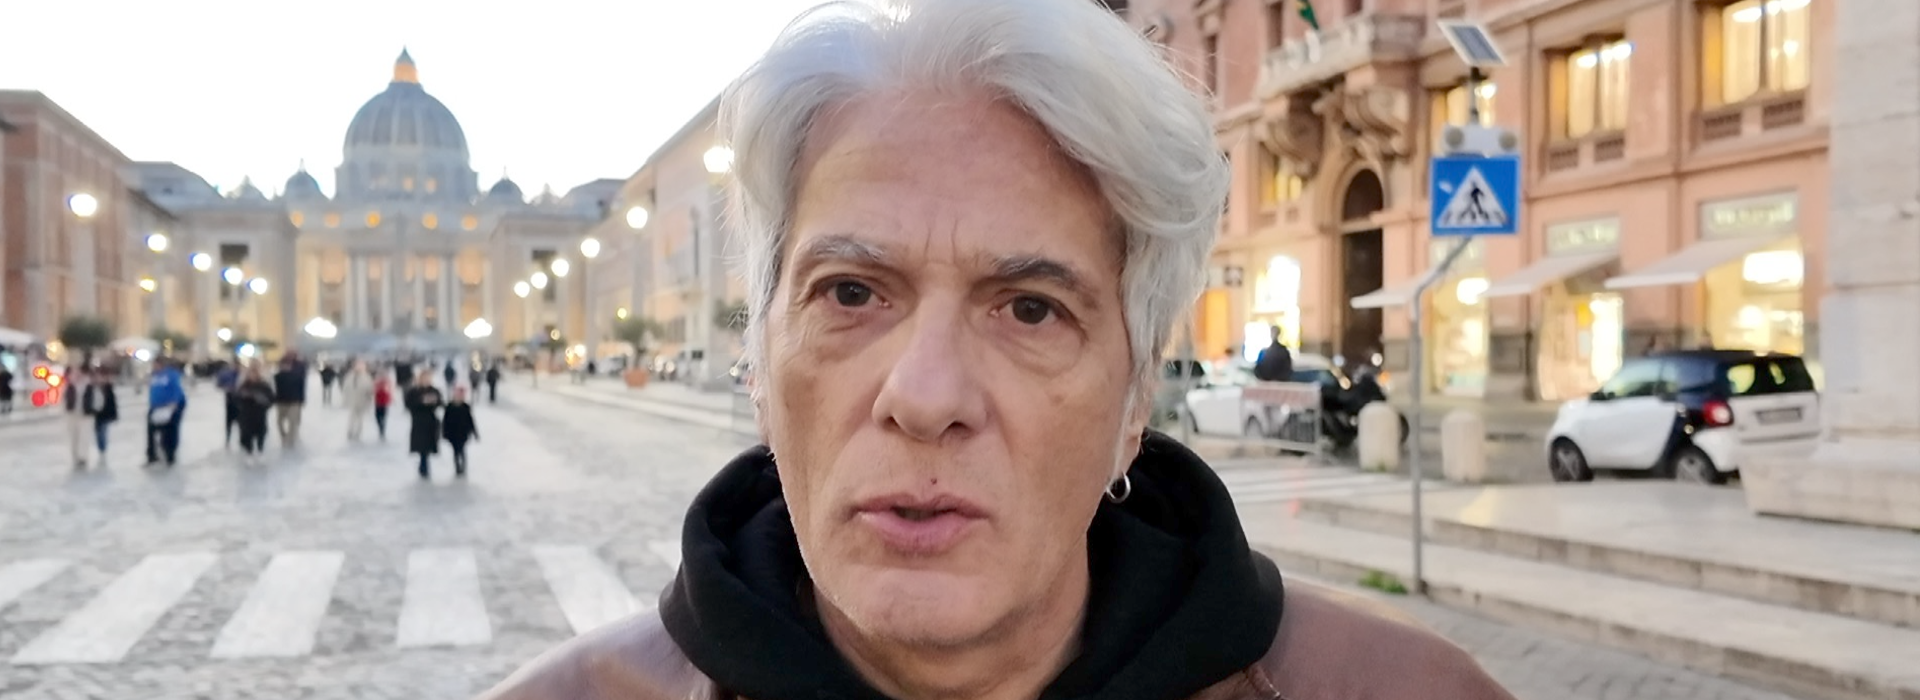 Pietro Orlandi: "il 13 gennaio in piazza contro chi vuole occultare la verità"